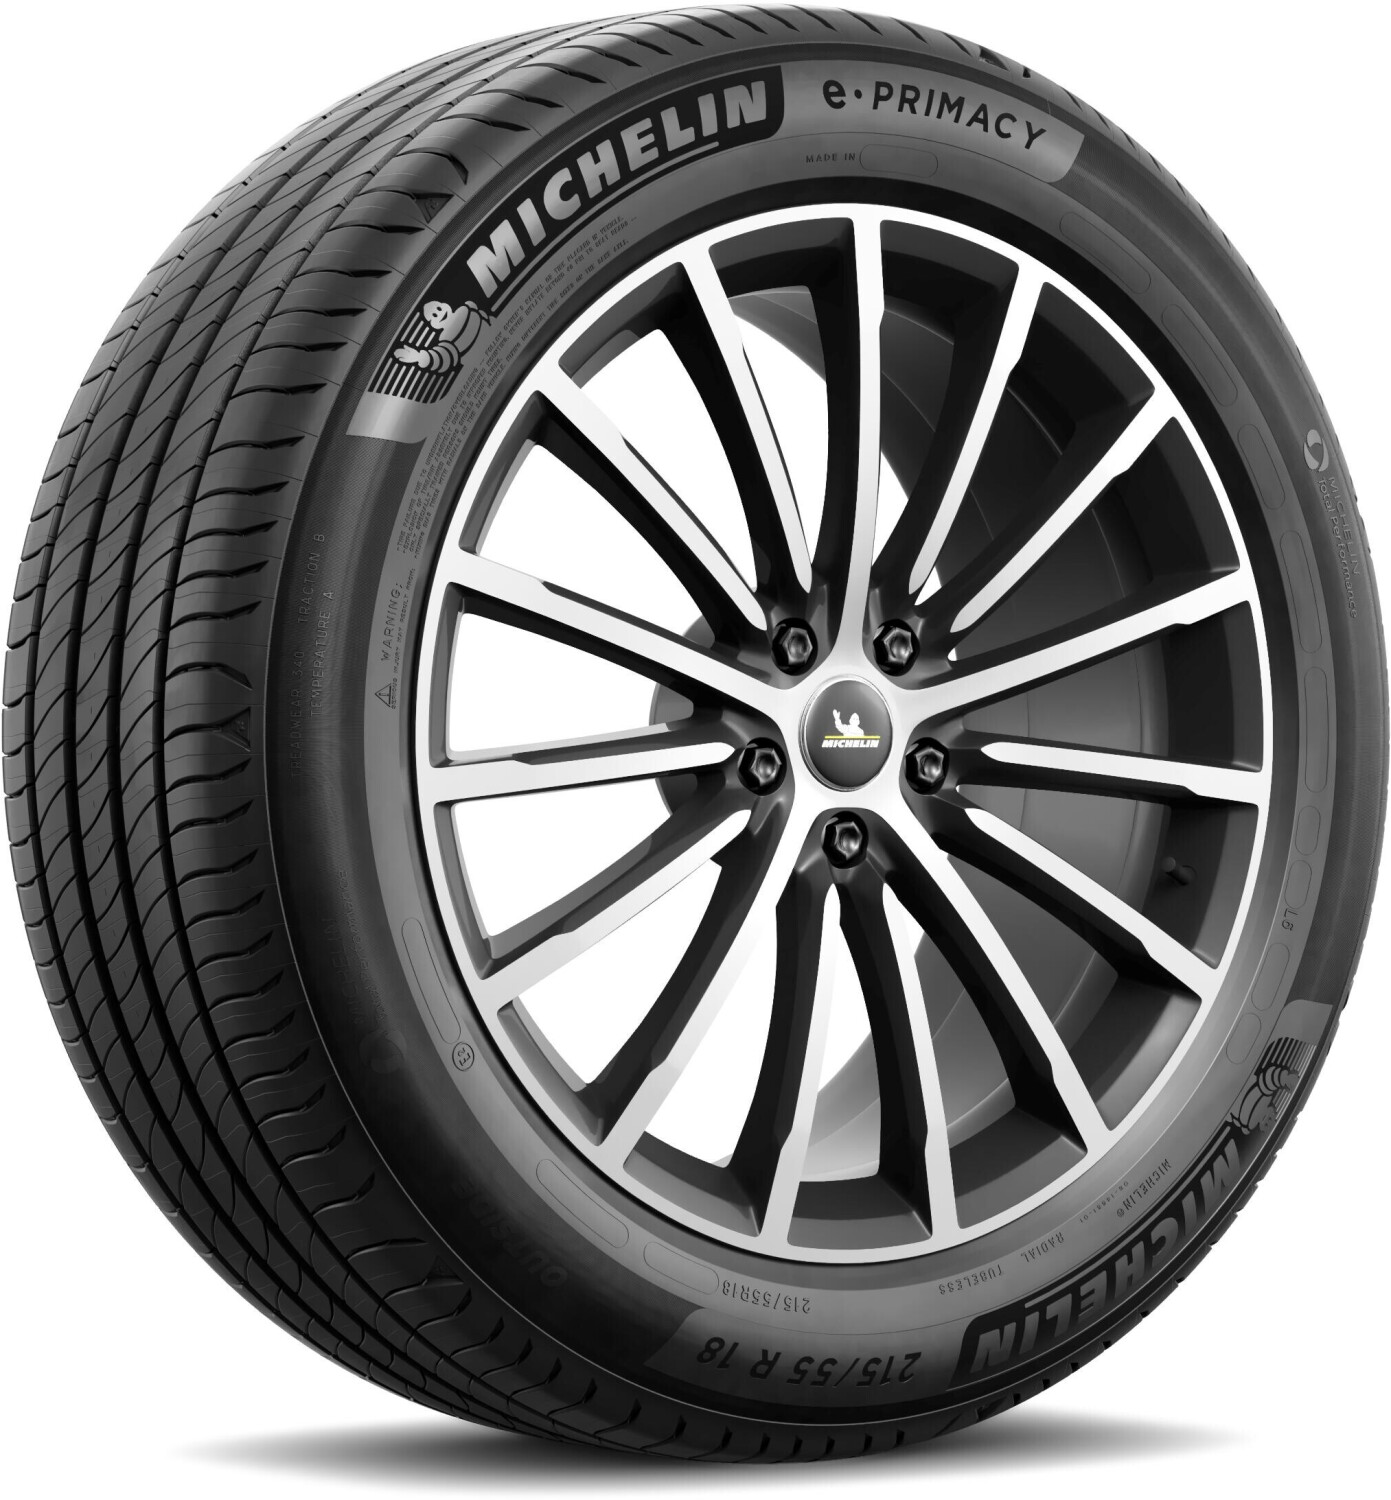 Michelin E Primacy 215/55 R18 99V XL FP au meilleur prix sur idealo.fr